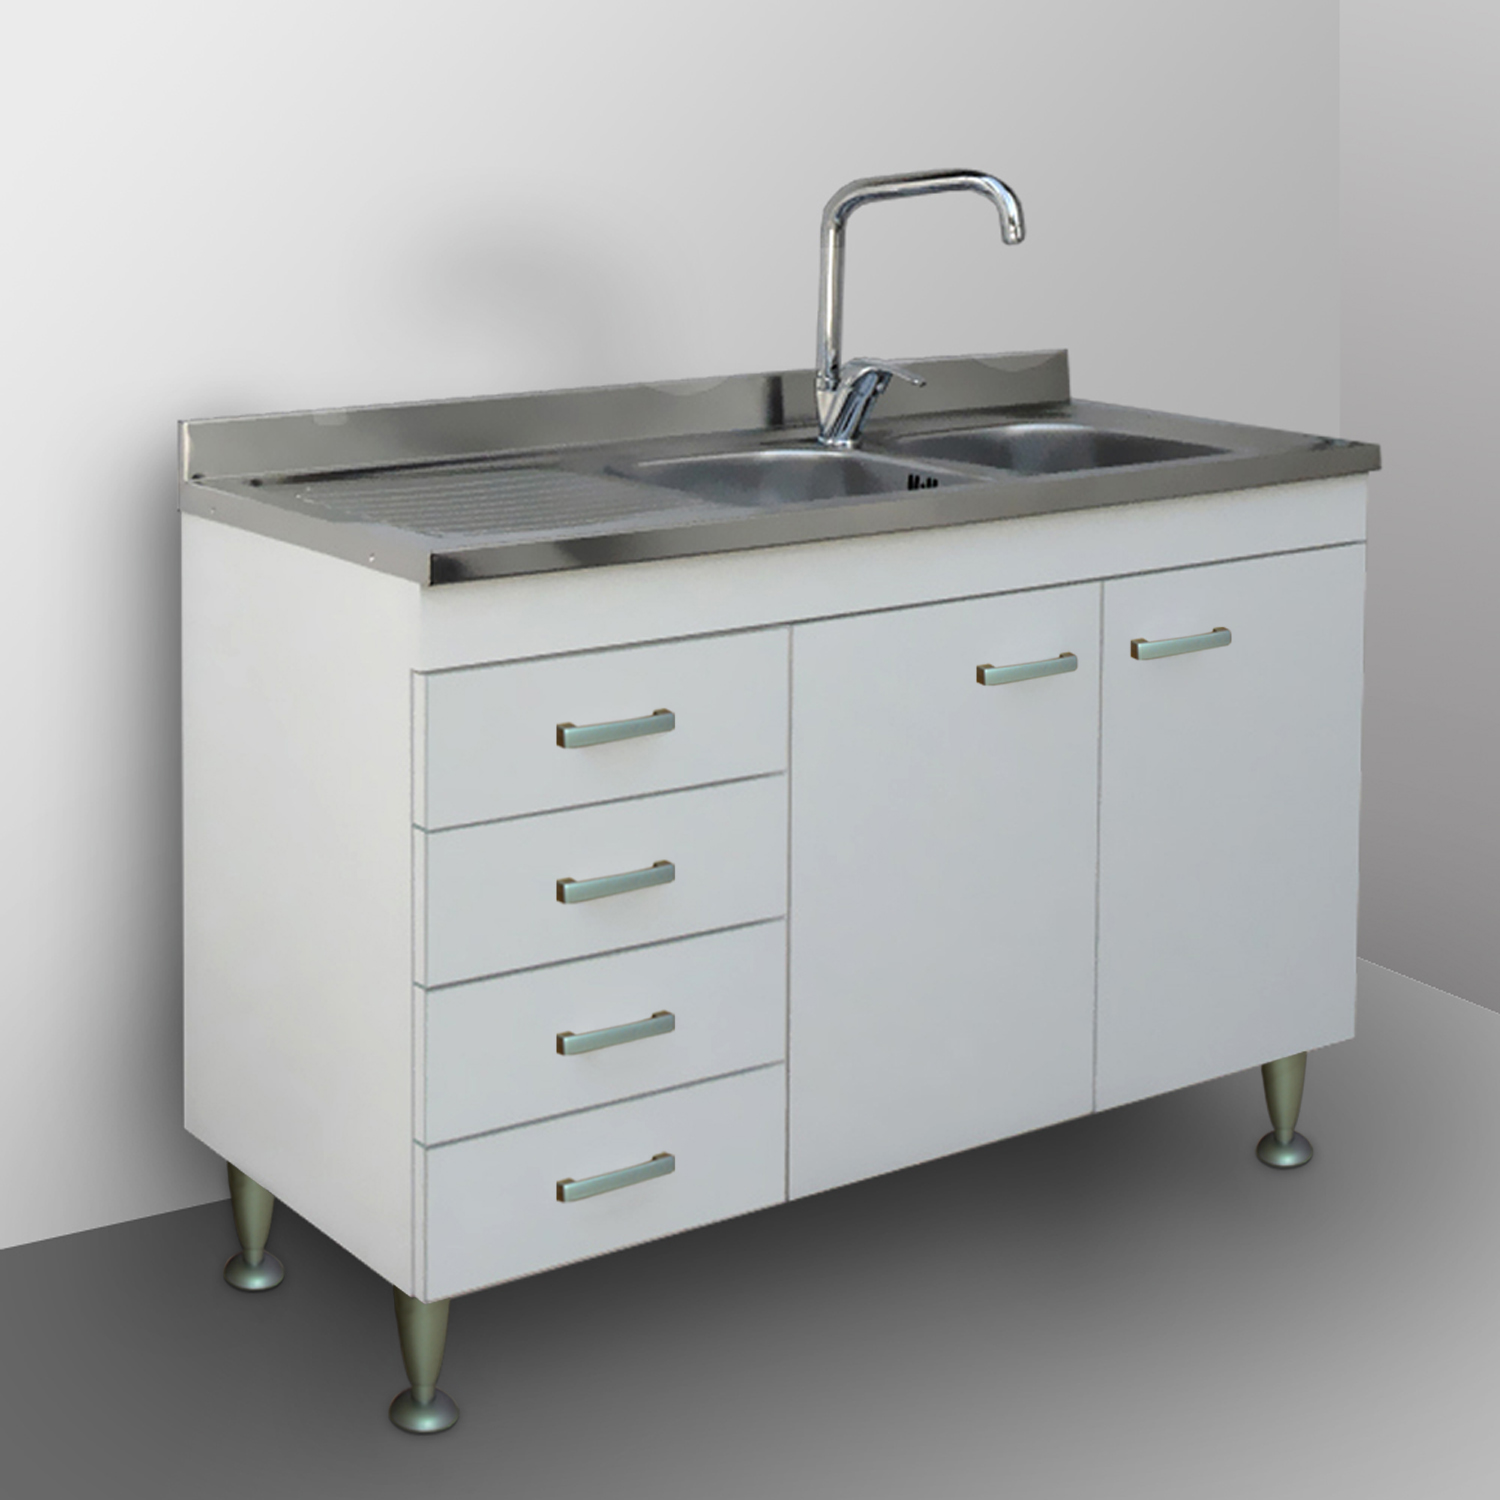 Mobile Kitchen Modular 120 White Sink Undercounter Garden Drainer Ebay